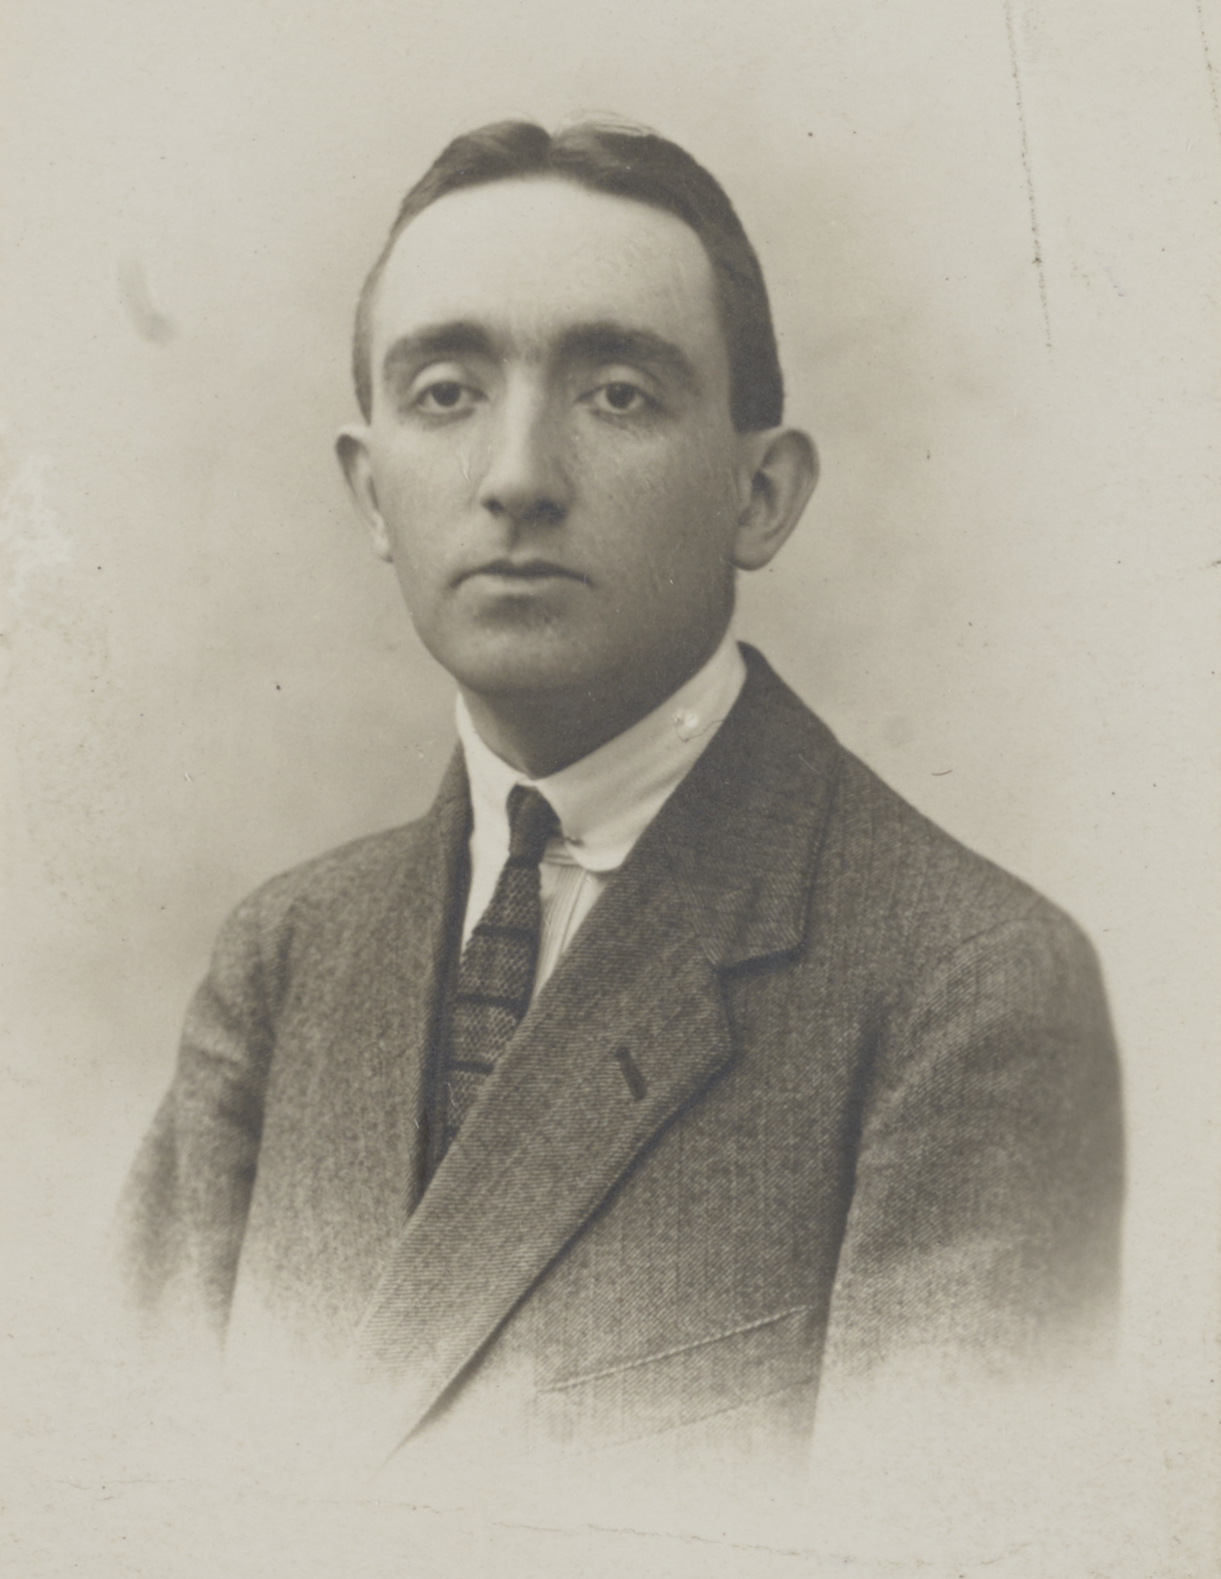 Portrait c. 1923